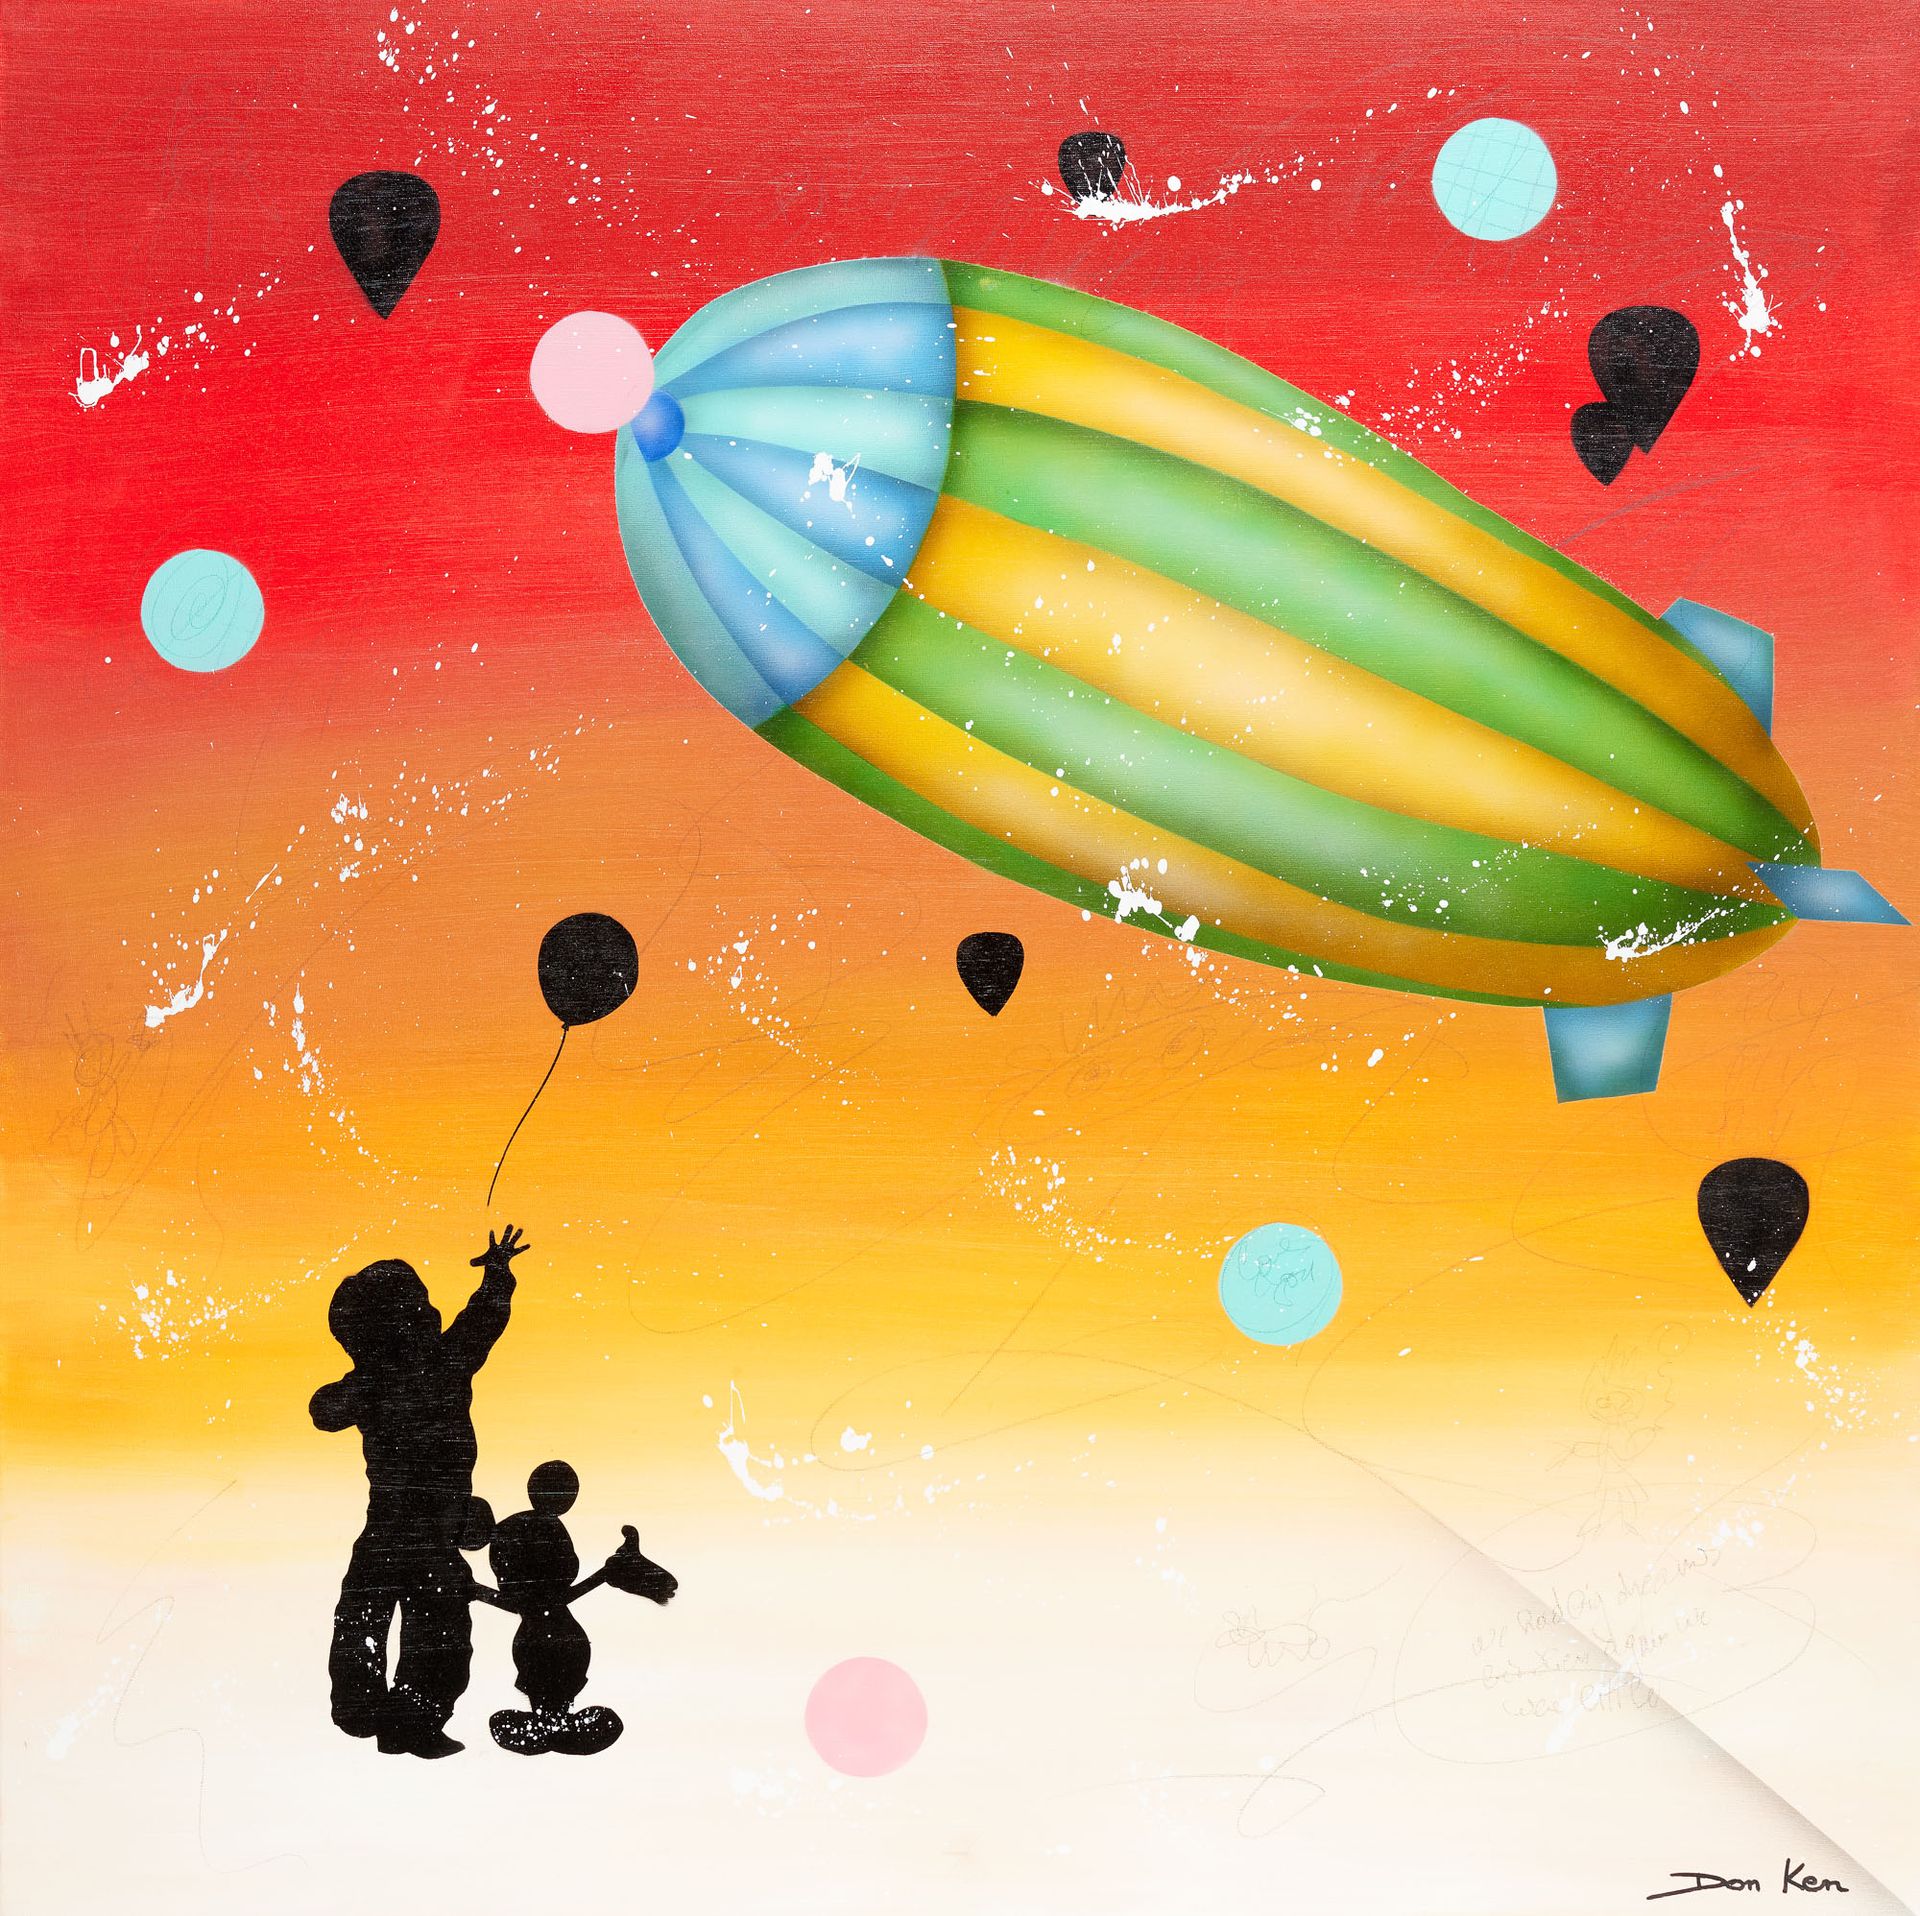 Don KEN École belge (1956) Acrílico sobre lienzo: "Big baloon".

Titulado y firm&hellip;